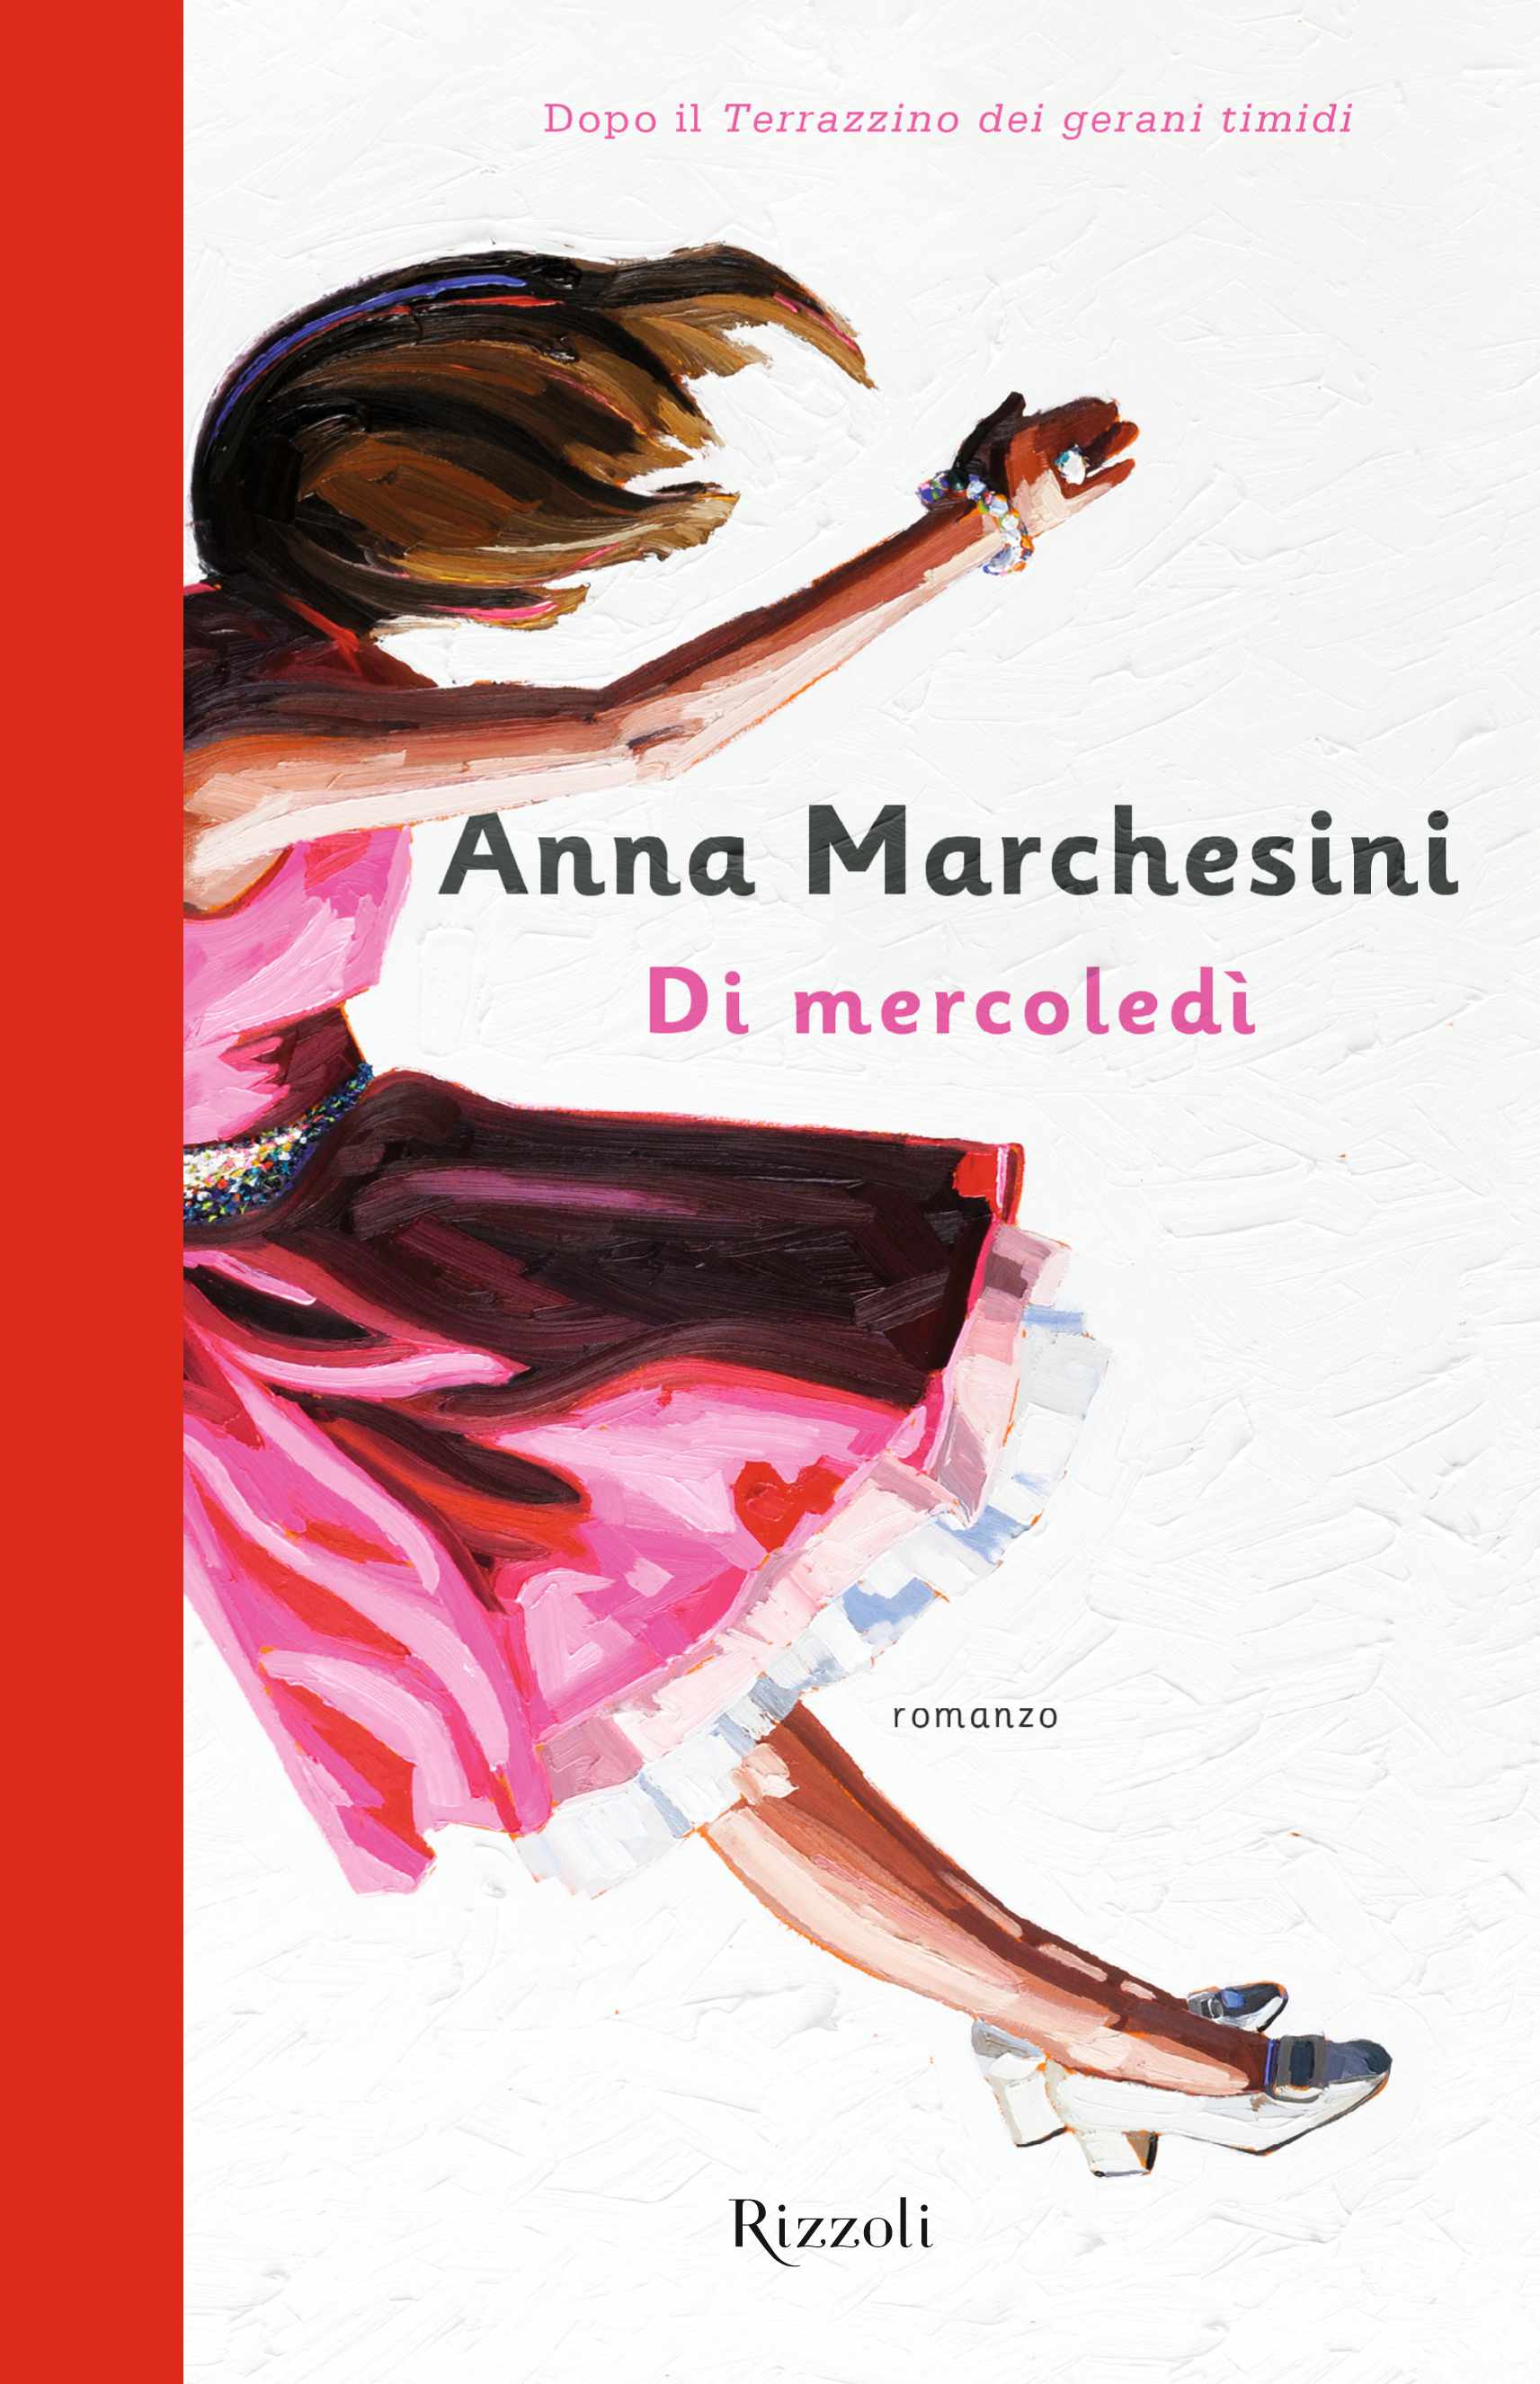 Questa sera al Quiretta di Roma Anna Marchesini presenta il libro “Di Mercoledì”